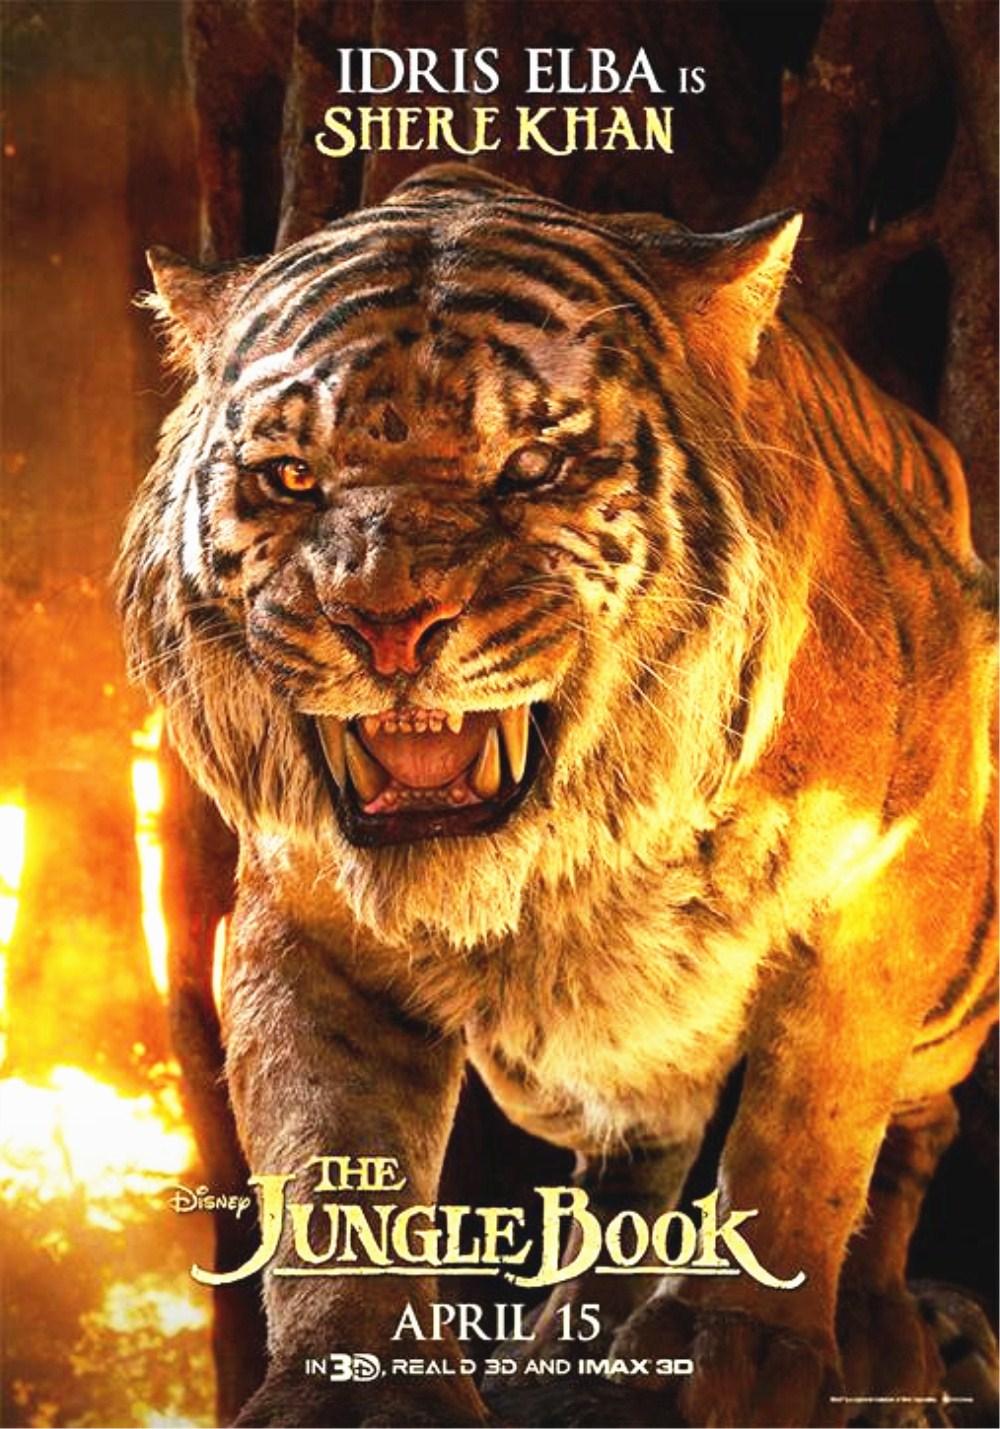 剑齿虎孟加拉虎人面虎电影中6个老虎形象哪个最帅